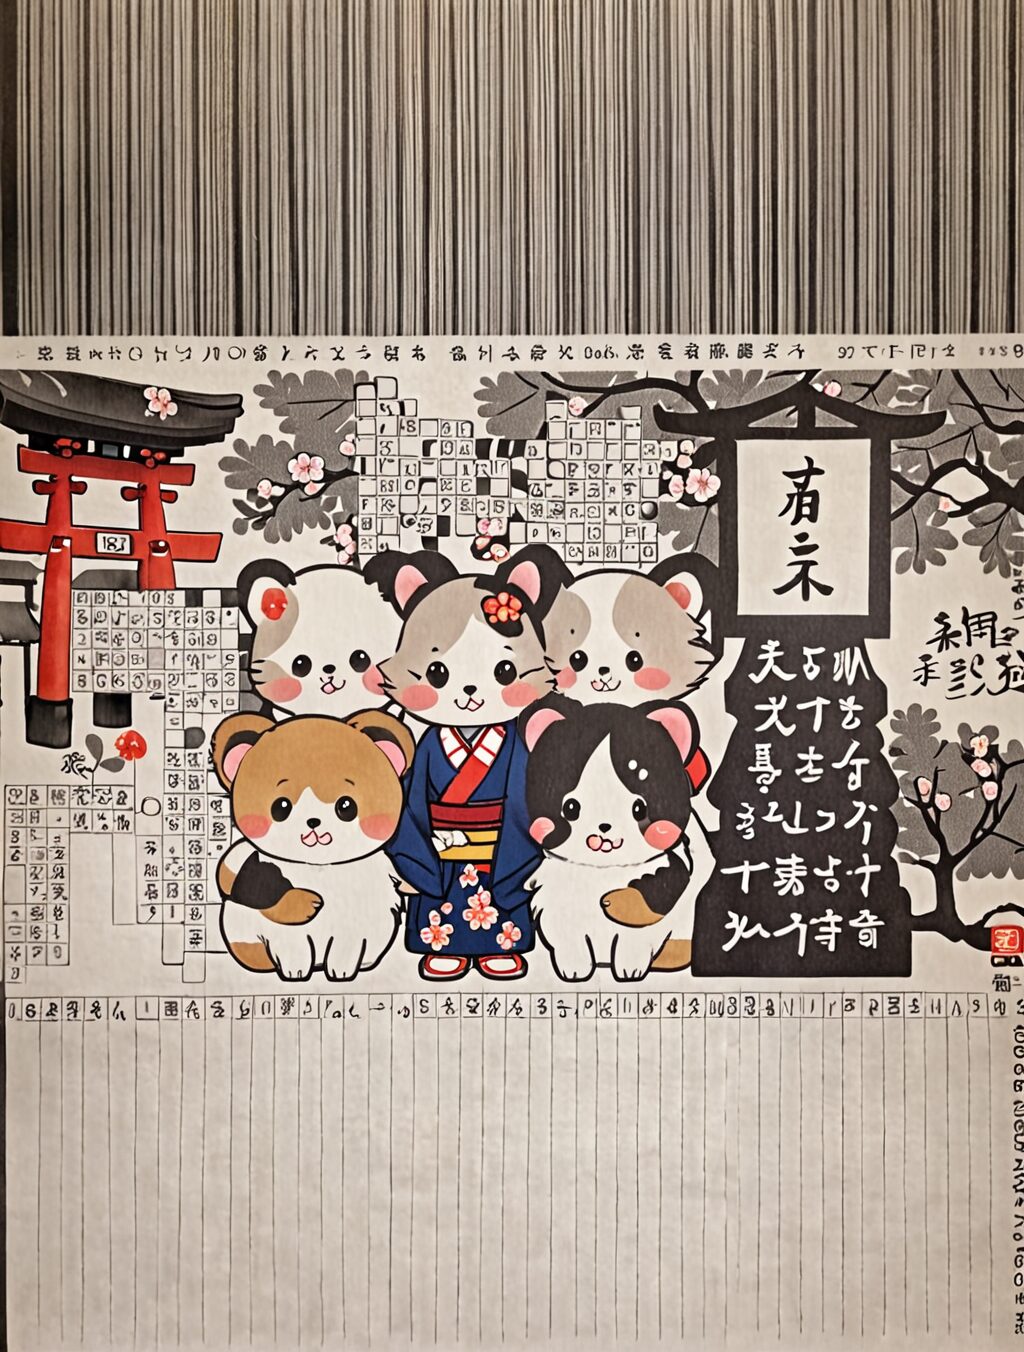 culture of cuteness in japan crossword